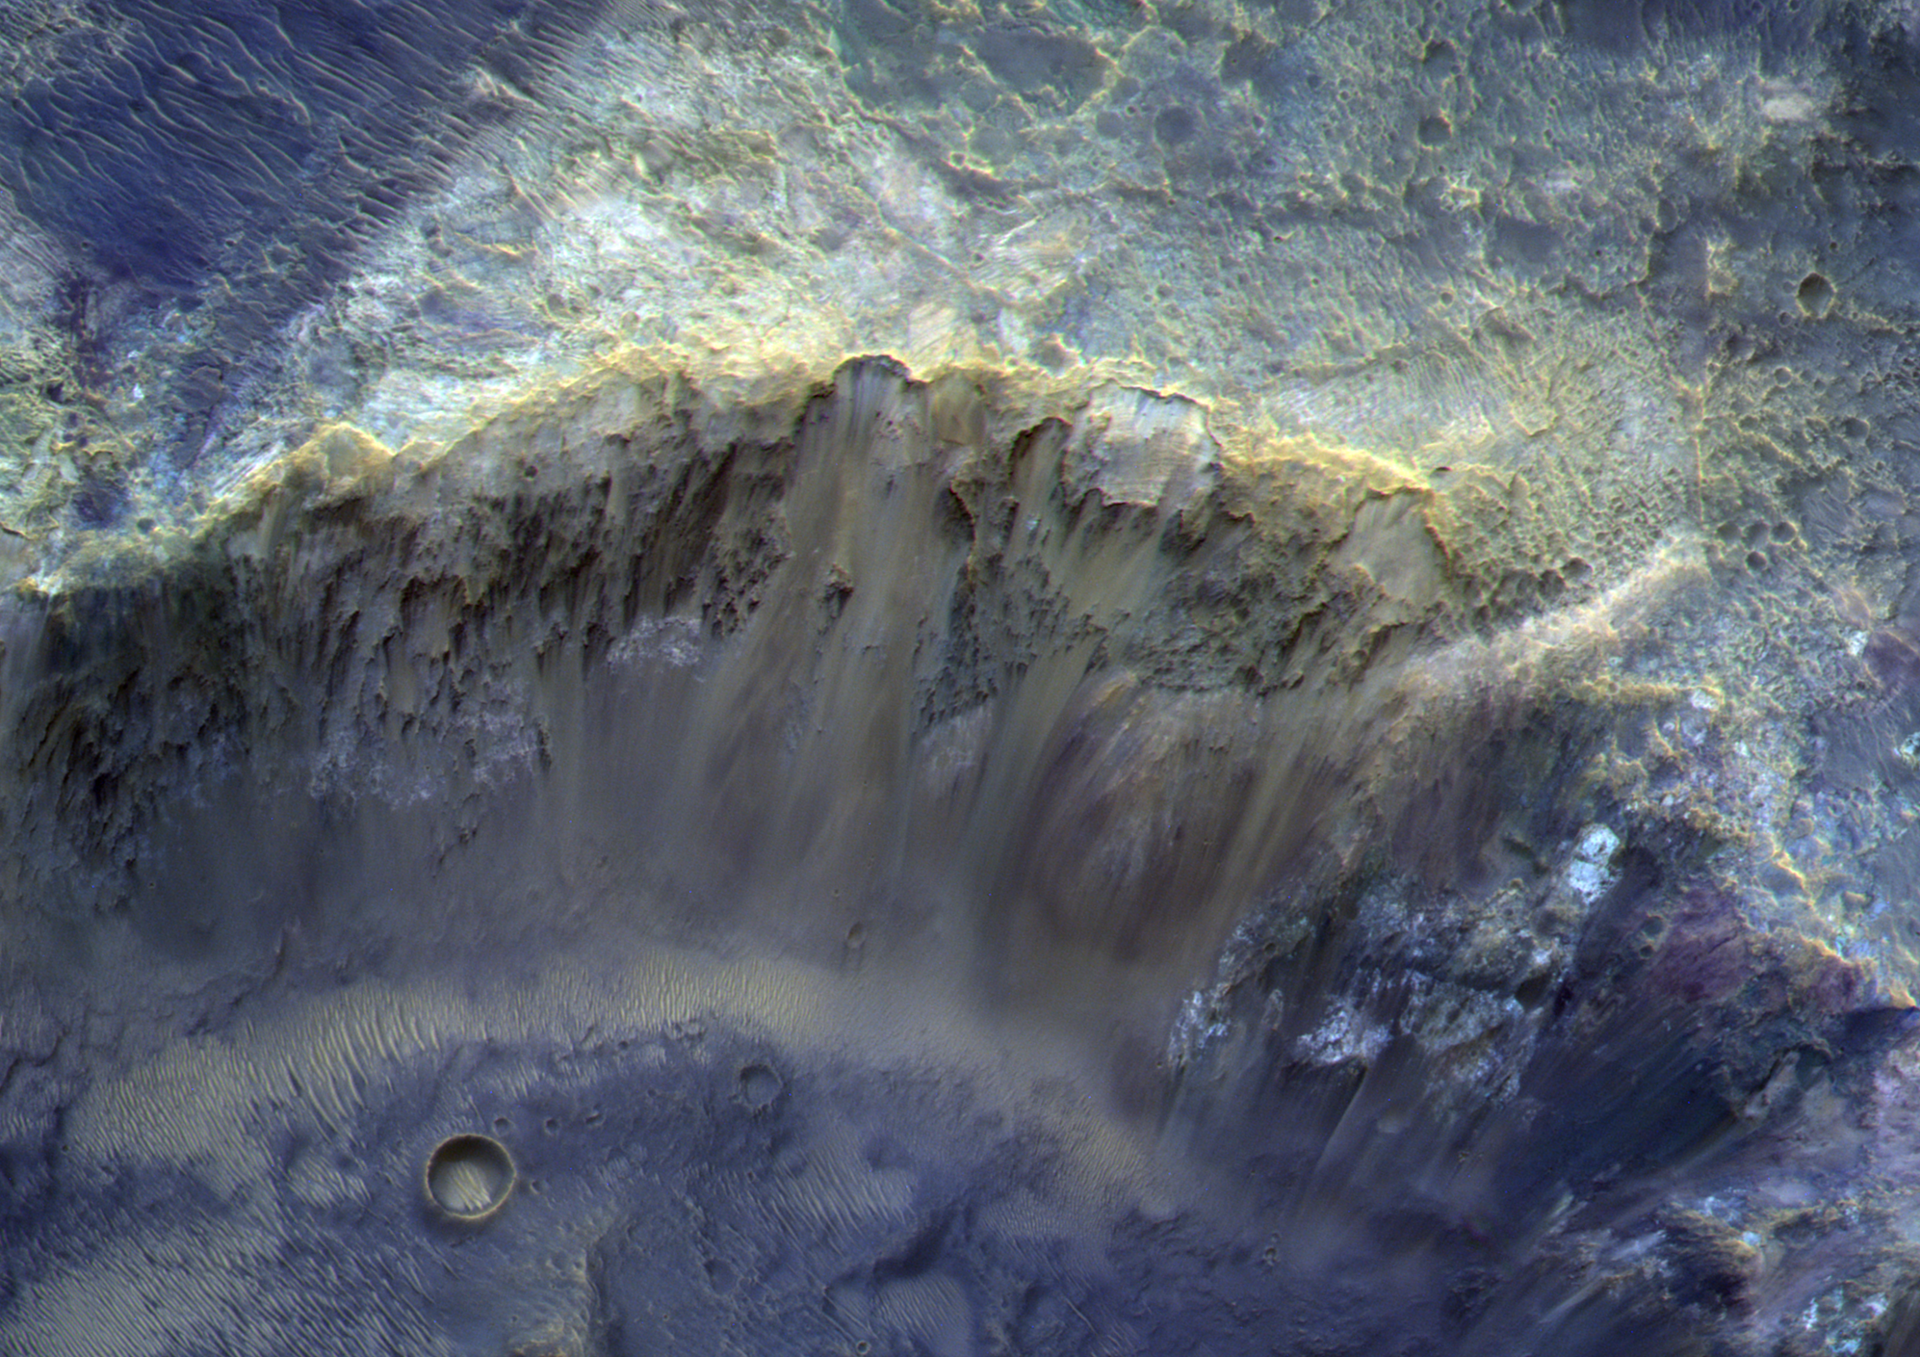 FOTO da superfície marciana revela minerais formados quando o planeta estava coberto de água - Sputnik Brasil, 1920, 15.02.2021